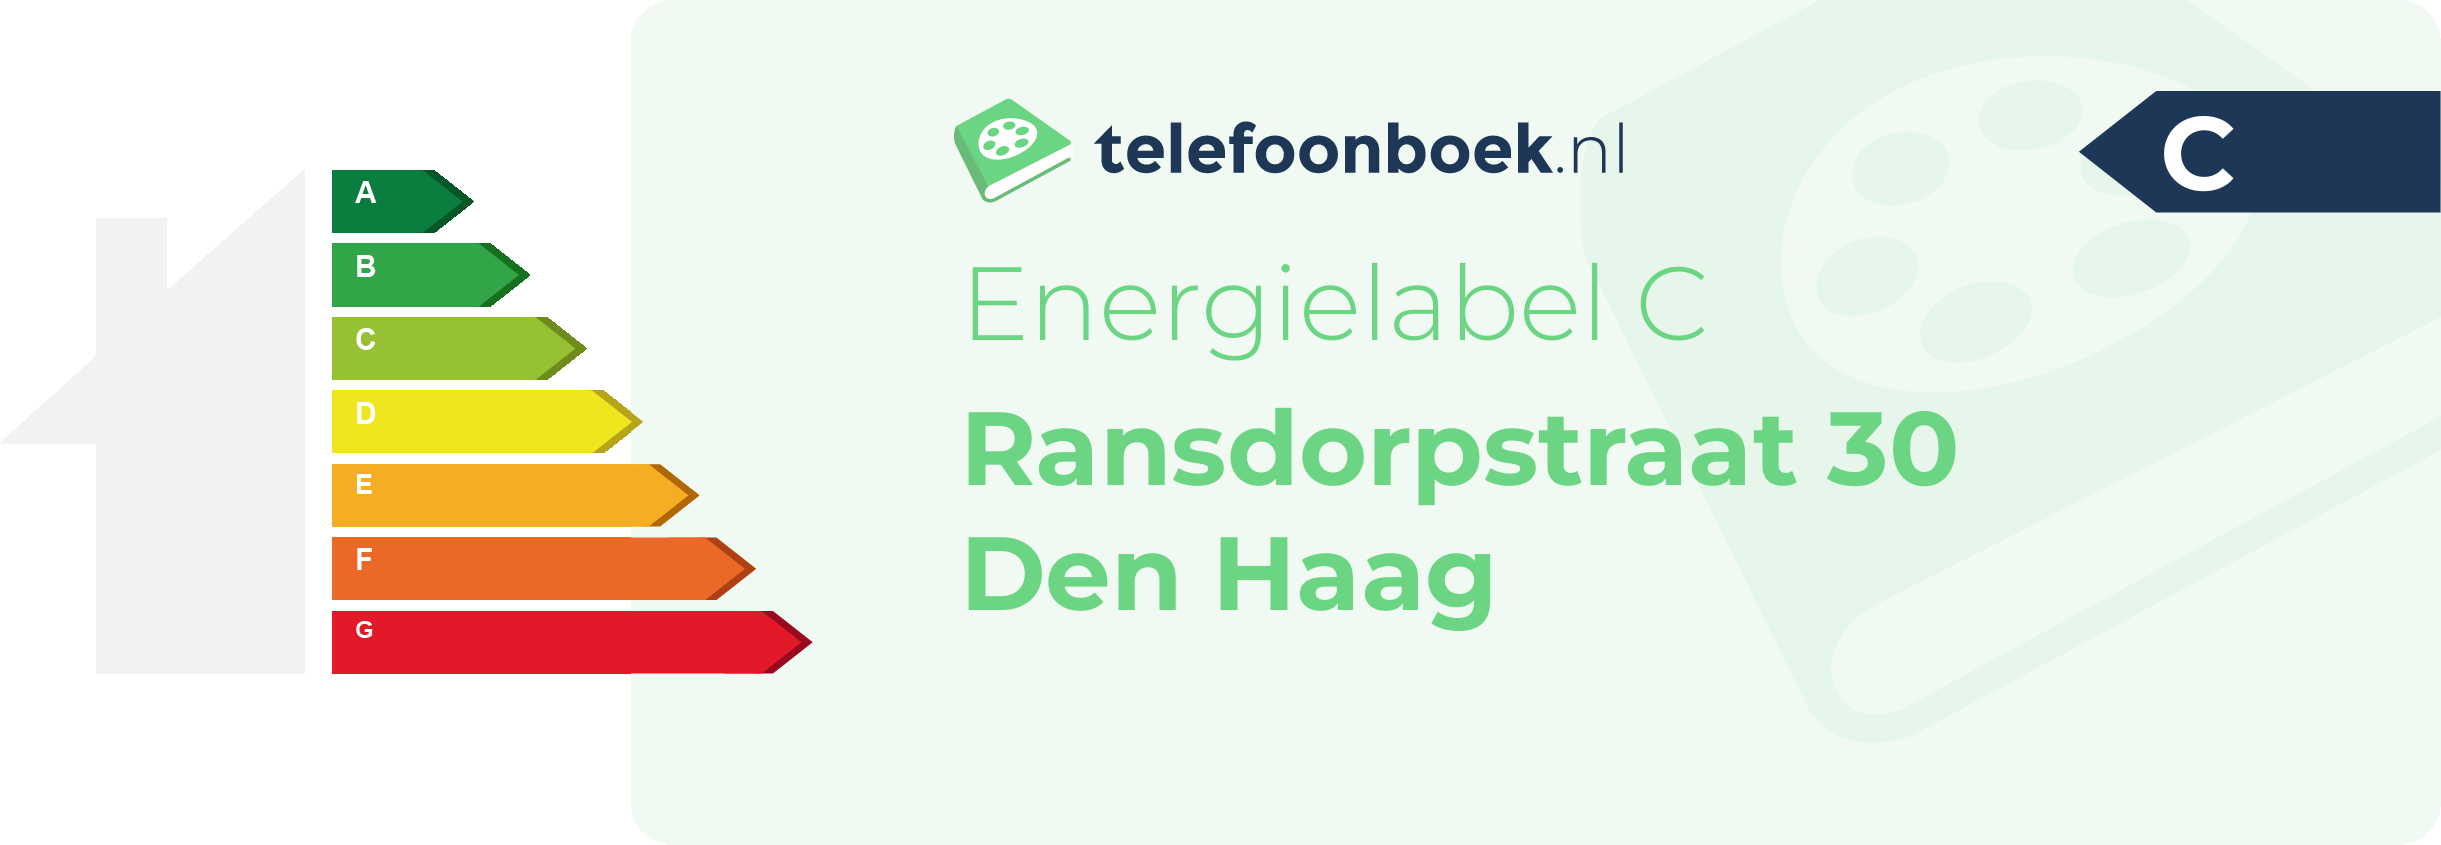 Energielabel Ransdorpstraat 30 Den Haag